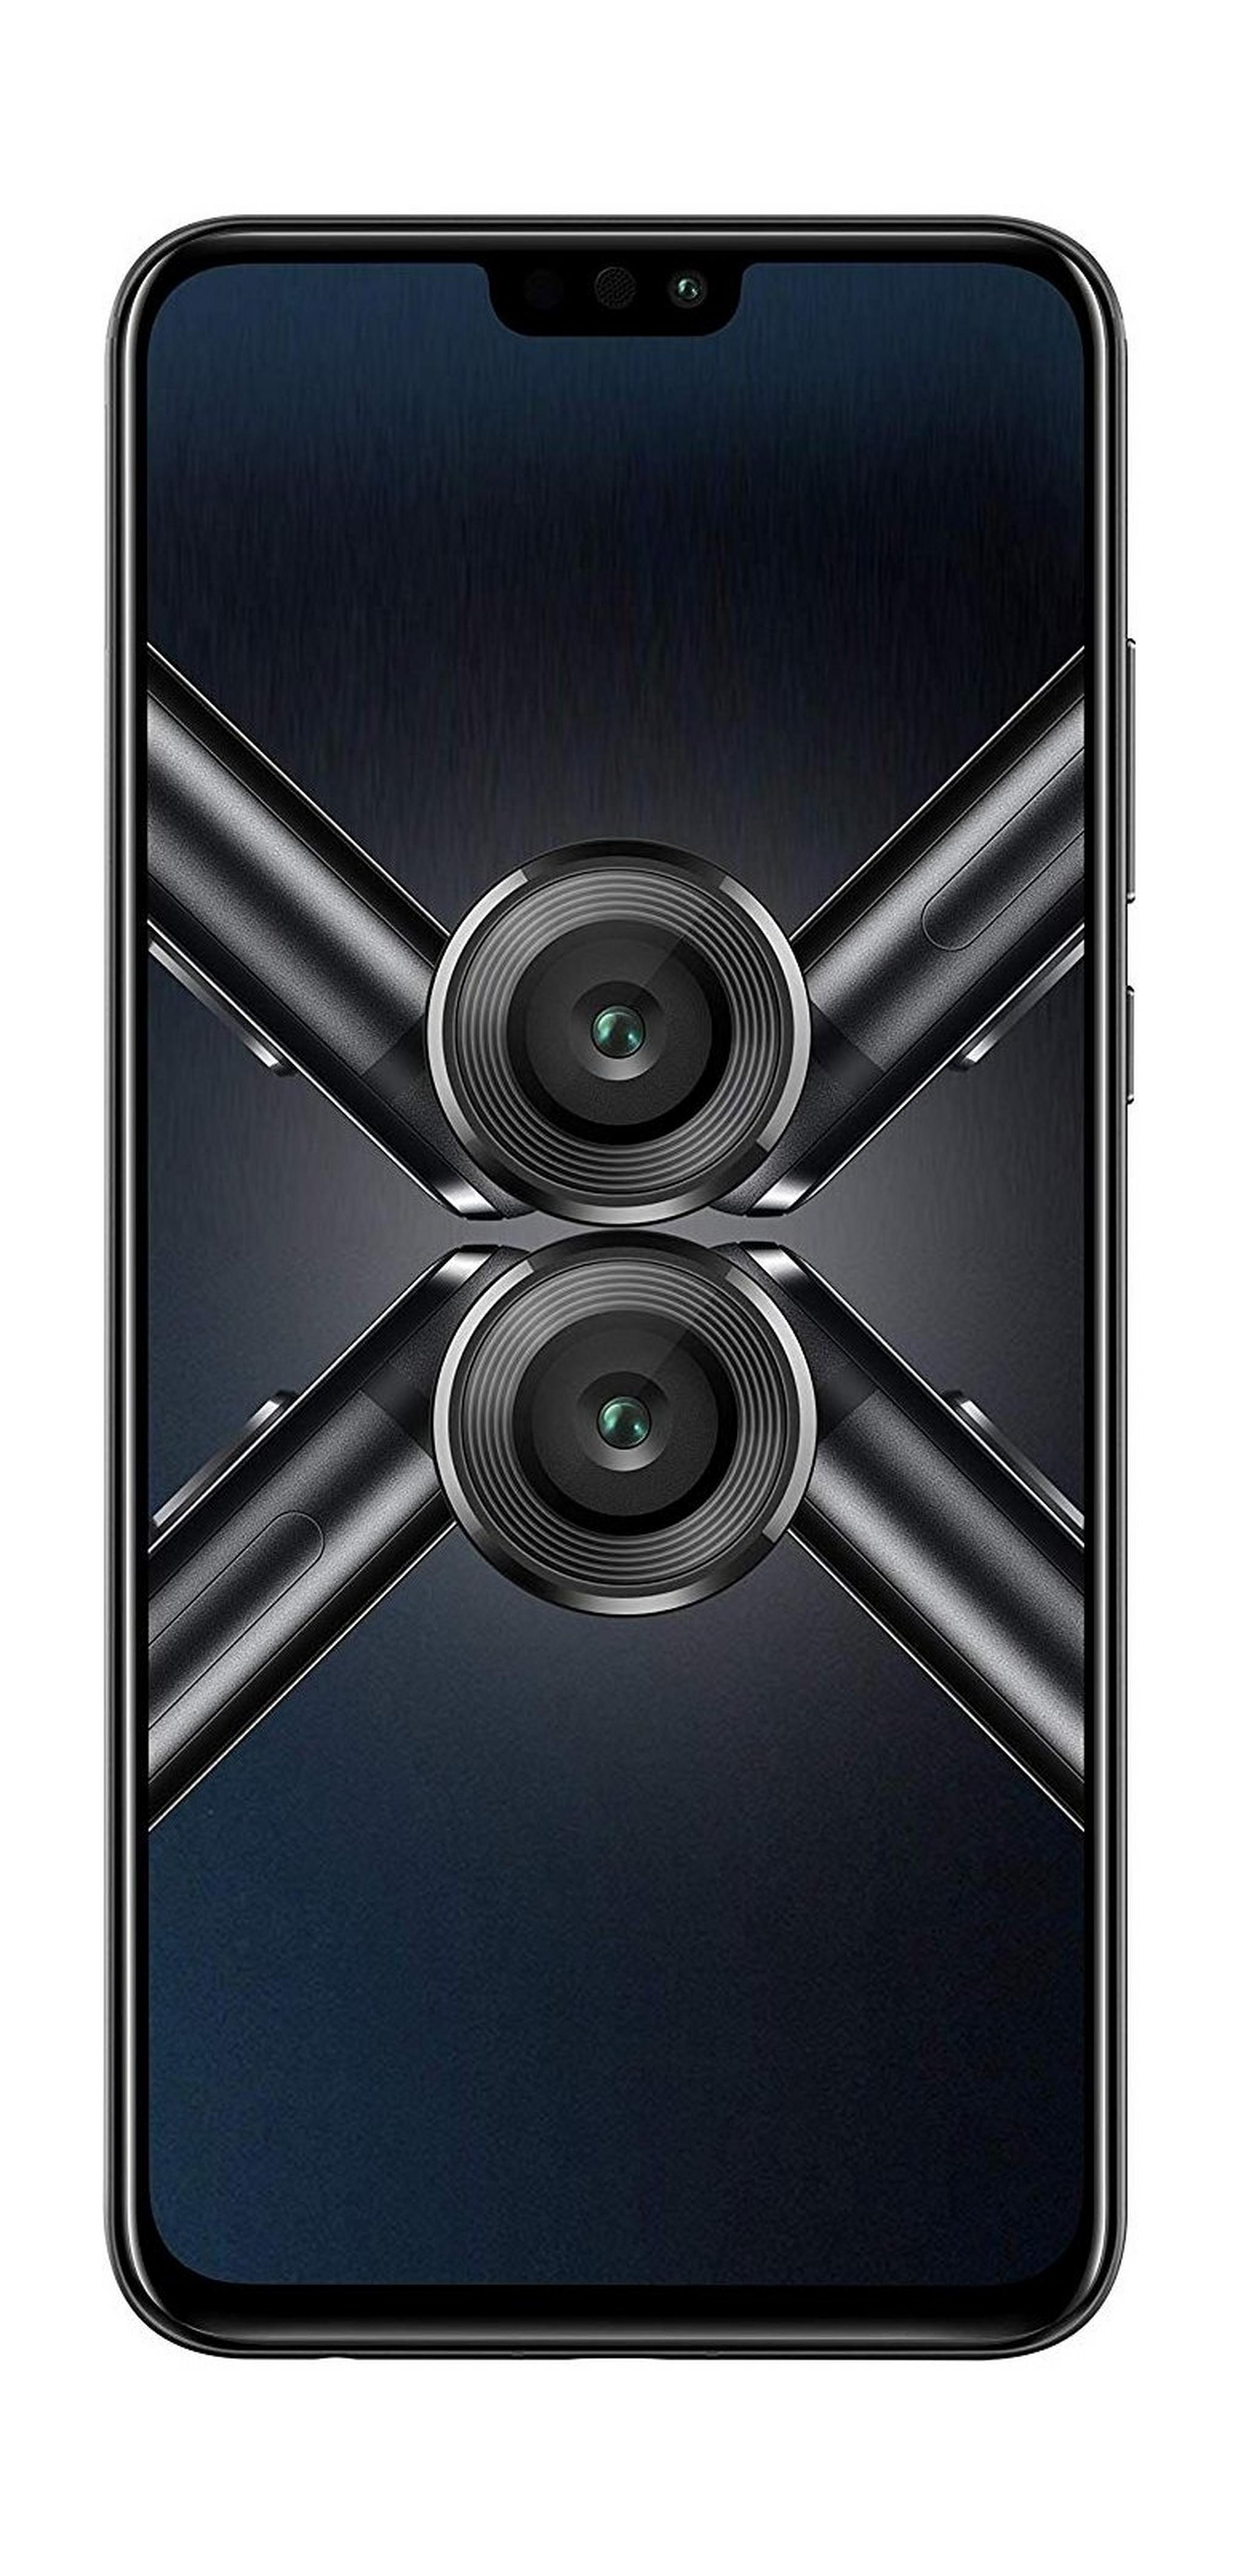 HONOR 8X 128GB Phone - Black